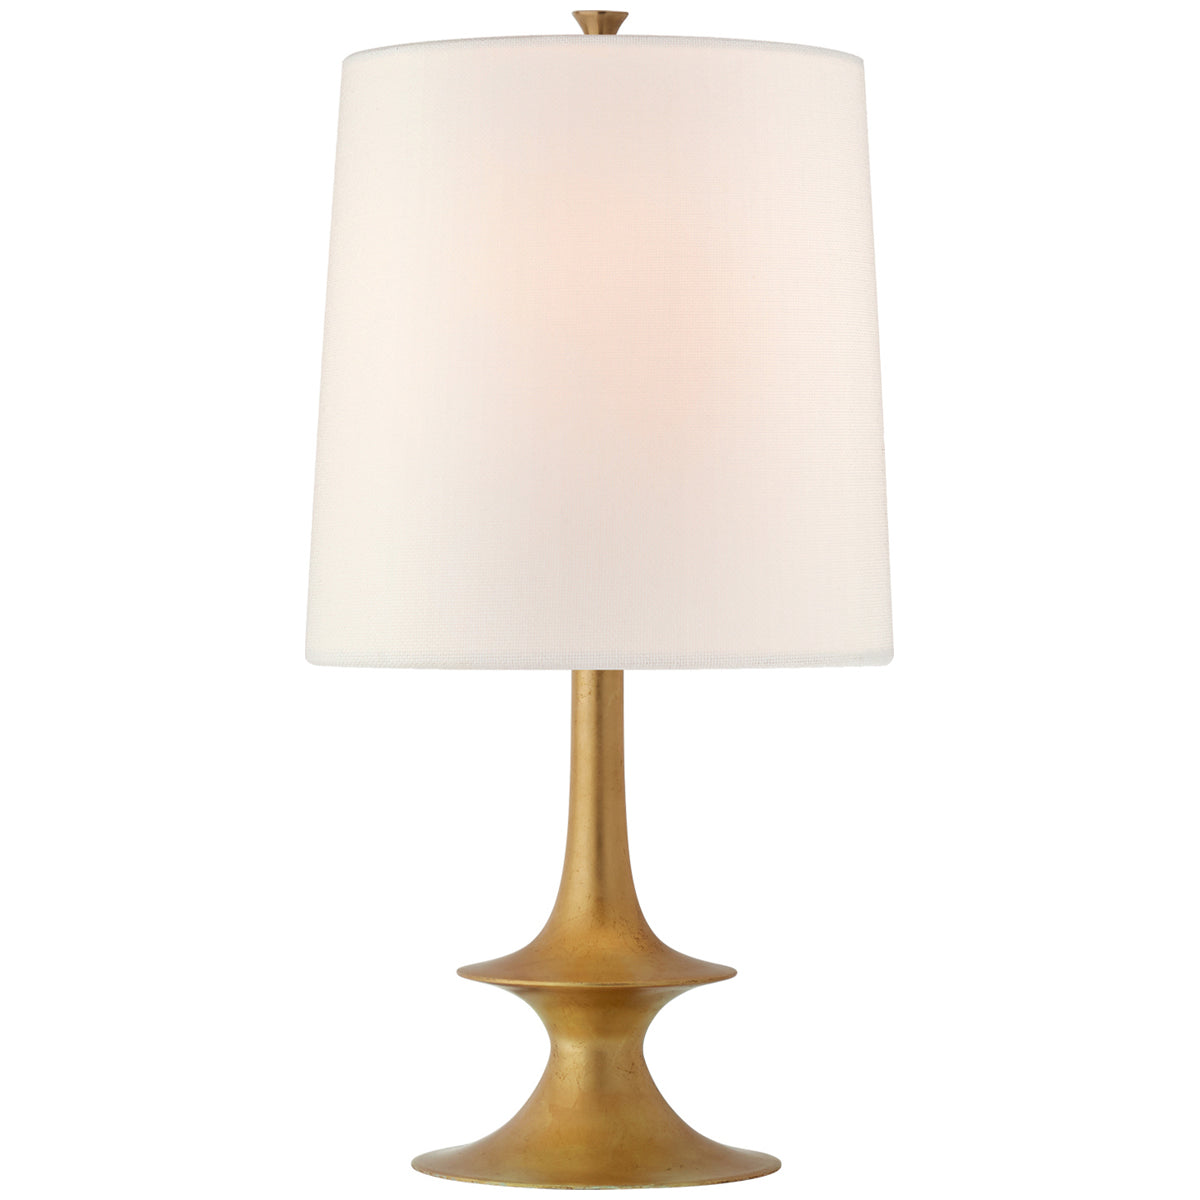 Visual Comfort Lakmos Medium Table Lamp